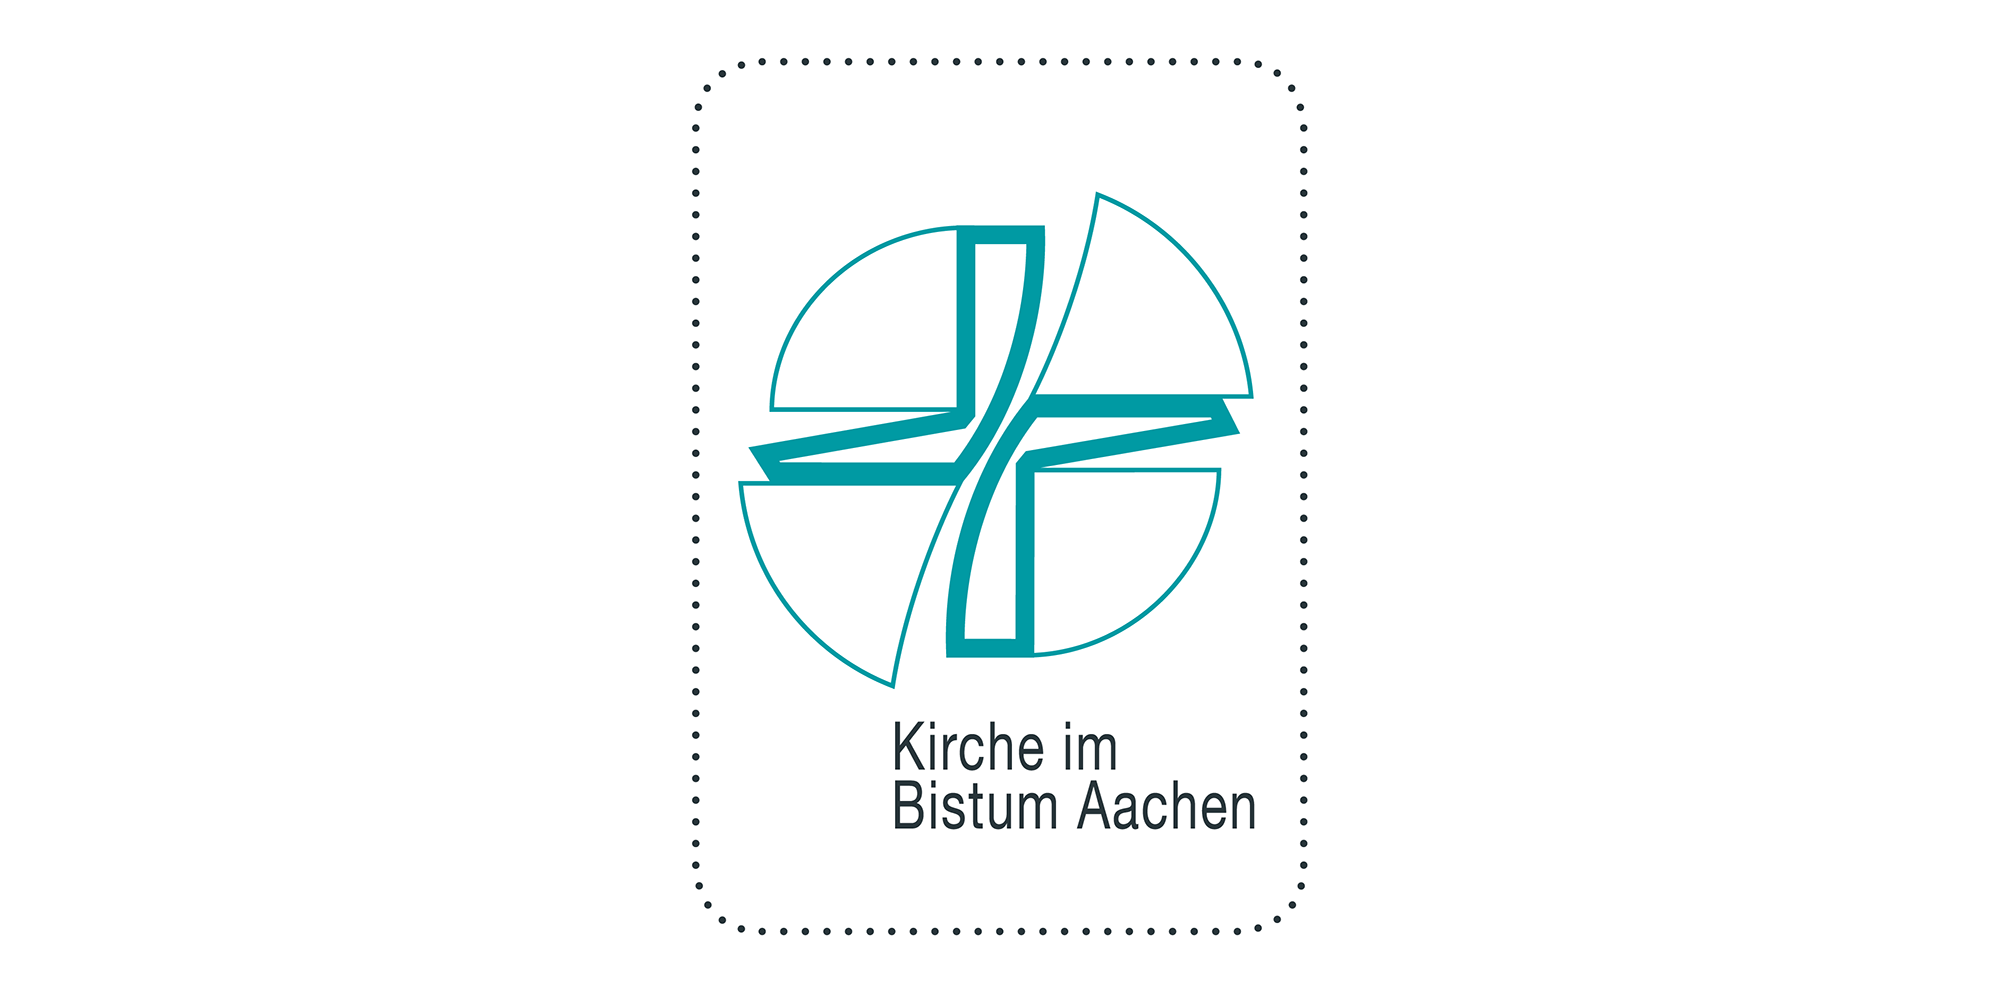 Logo Bistum Aachen (outline) (c) Bistum Aachen